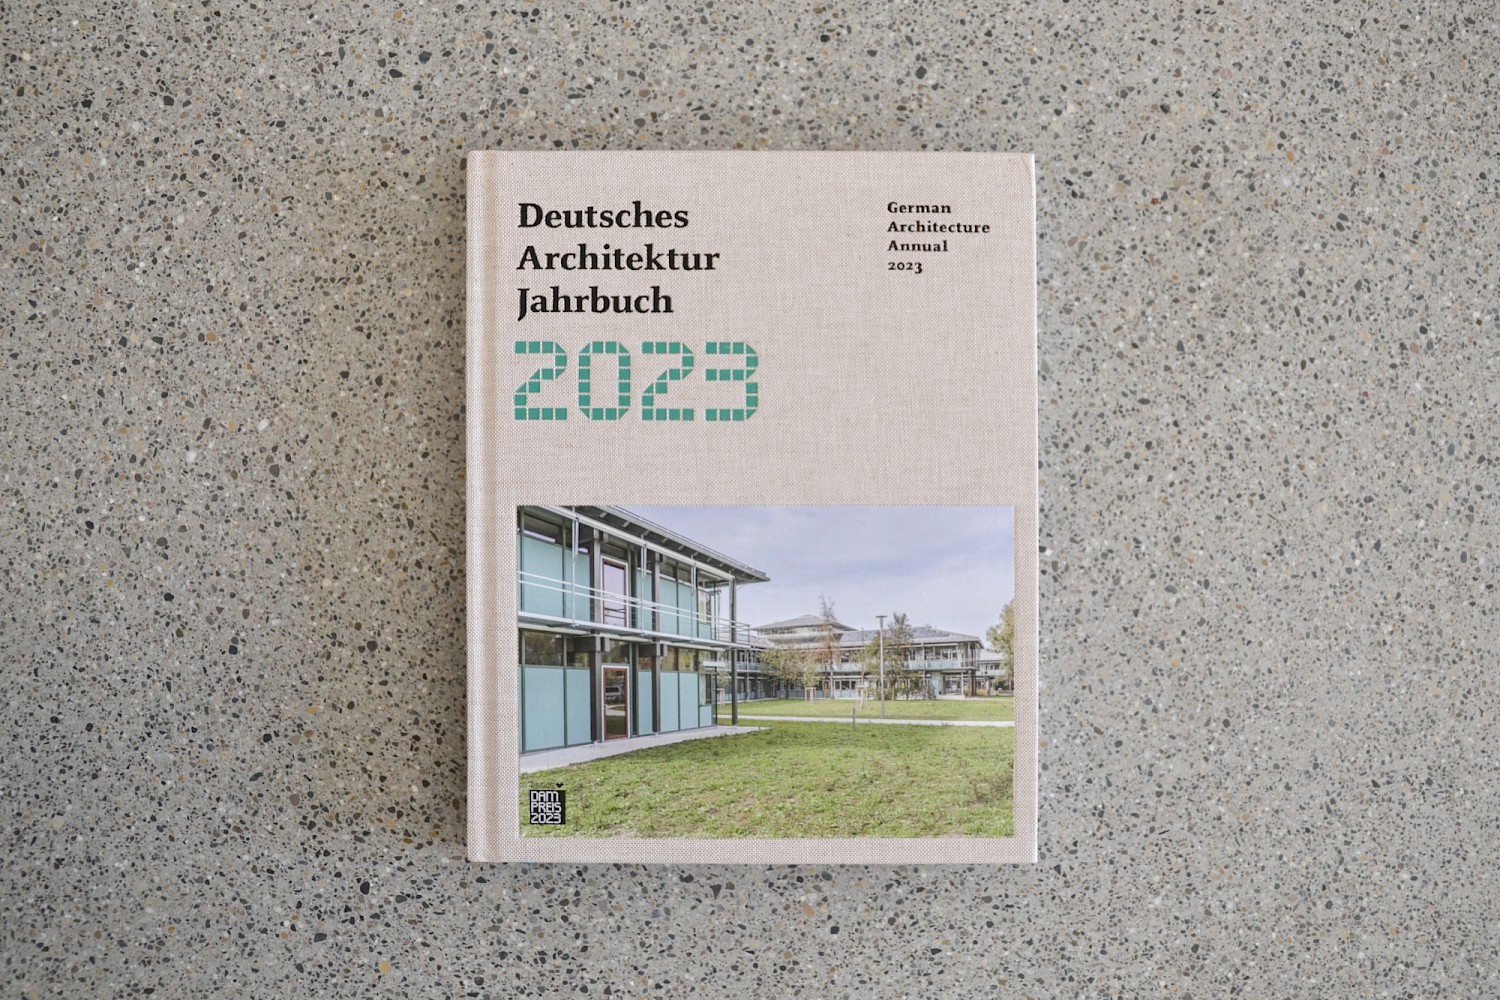 Publikation Deutsches Architektur Jahrbuch 2023, Brauereihalle Kirchheim